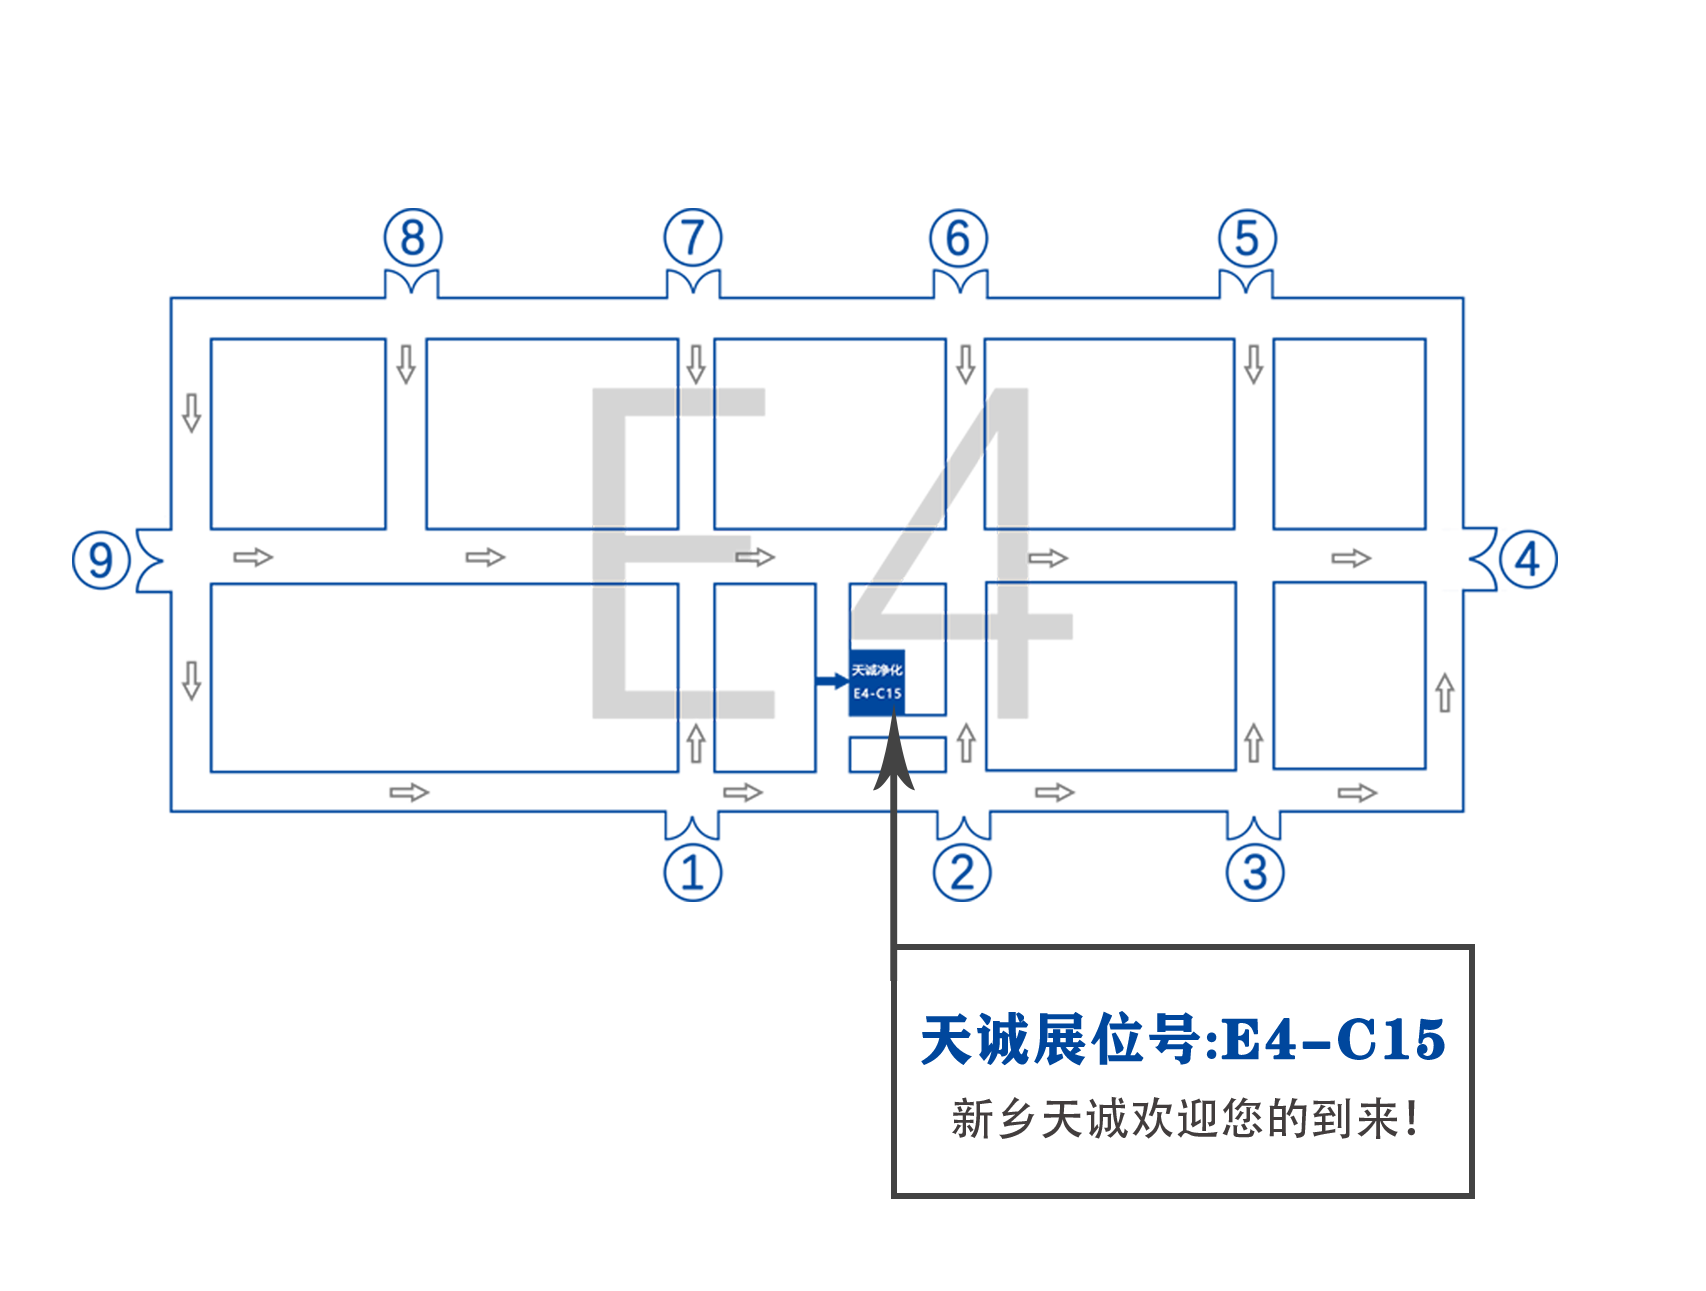 展位圖E4-C15.png